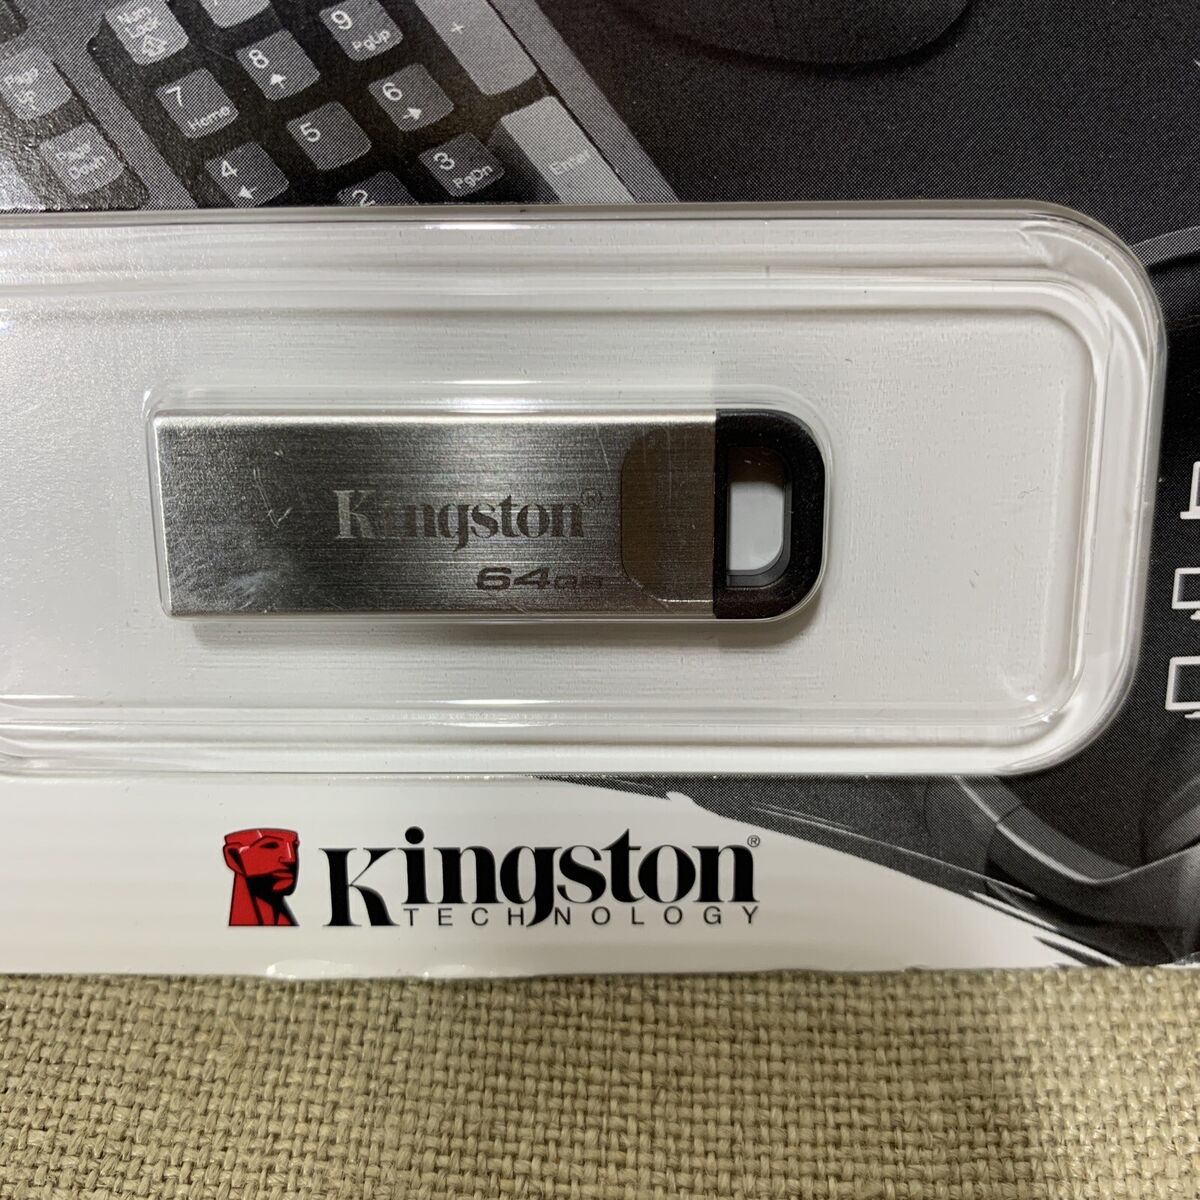 Kingston DataTraveler Kyson - clé USB - 32 Go